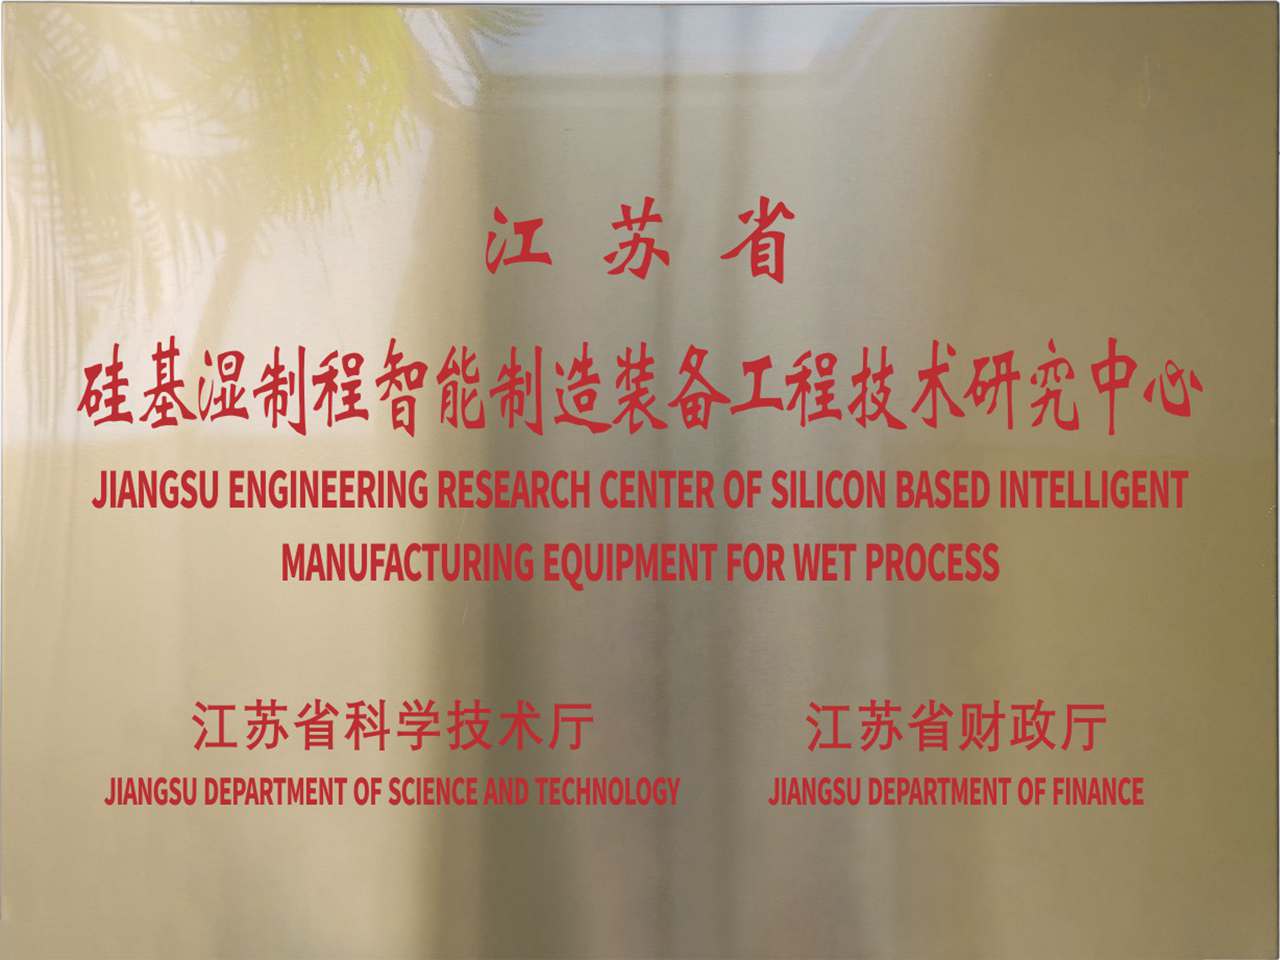 江苏省硅基湿制程智能制造装备工程技术研究中心